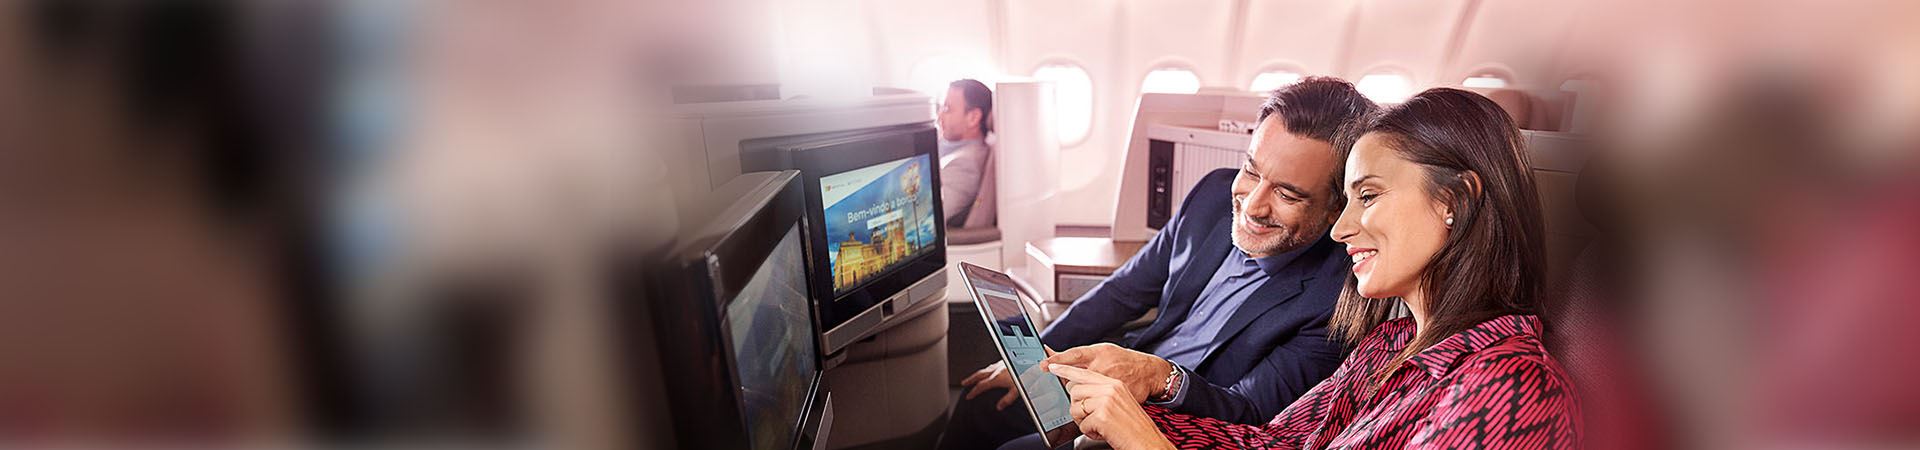 Крупный план улыбающейся женщины и улыбающегося мужчины, сидящих в самолете. Женщина держит планшет, а мужчина на него смотрит. Они оба указывают на экран планшета. Перед ними два экрана, встроенные в кресла самолета.